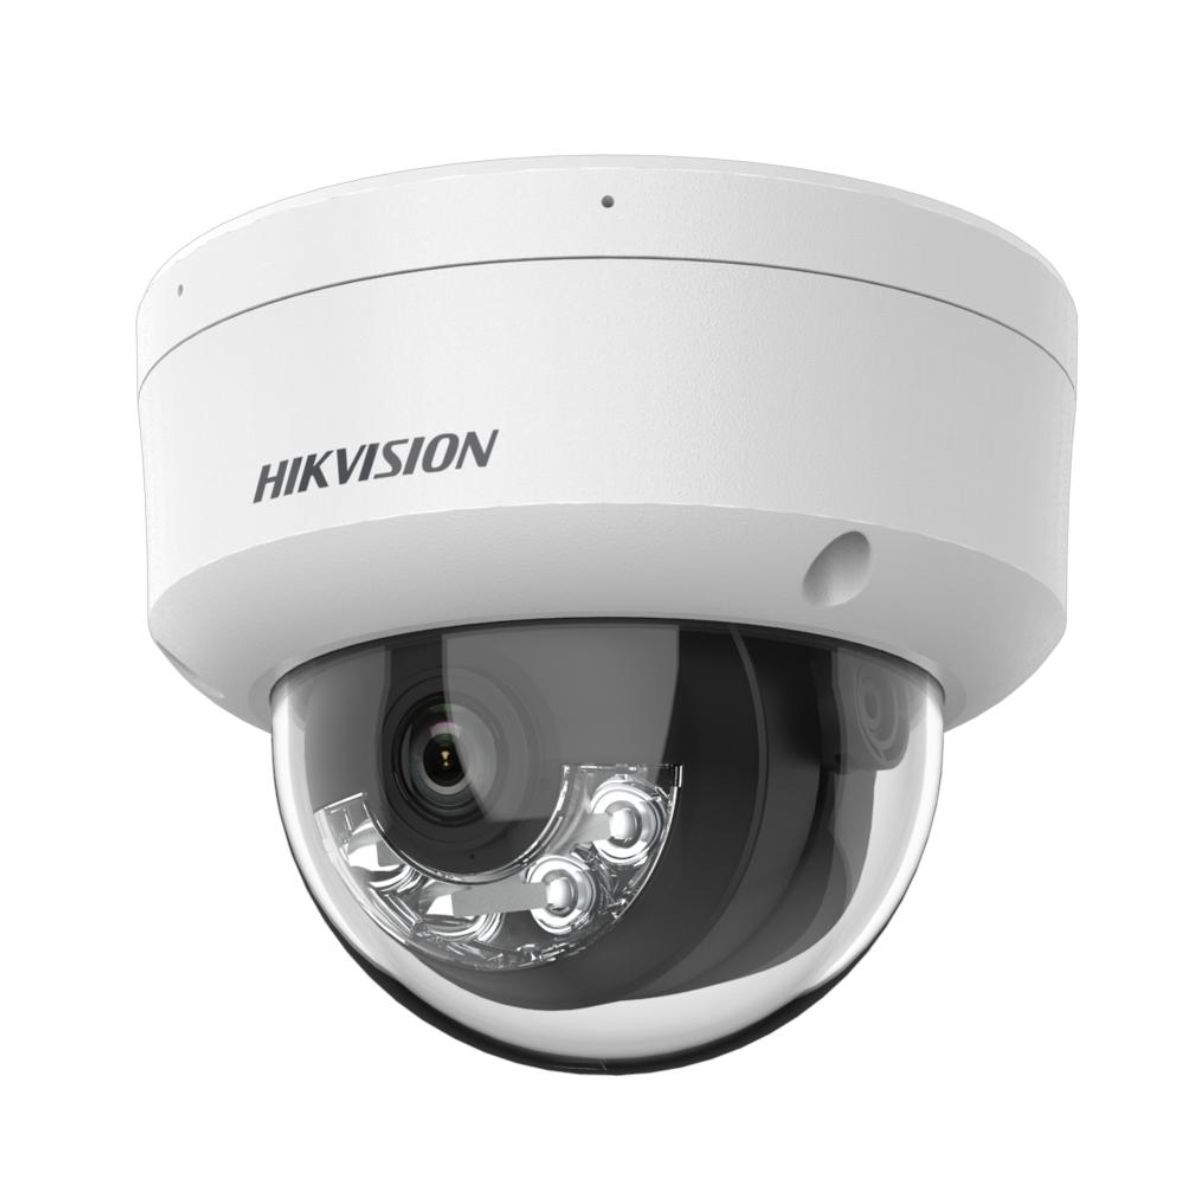 Camera IP Dome 4MP Hikvision DS-2CD1143G2-LIUF hồng ngoại 30m, tích hợp mic